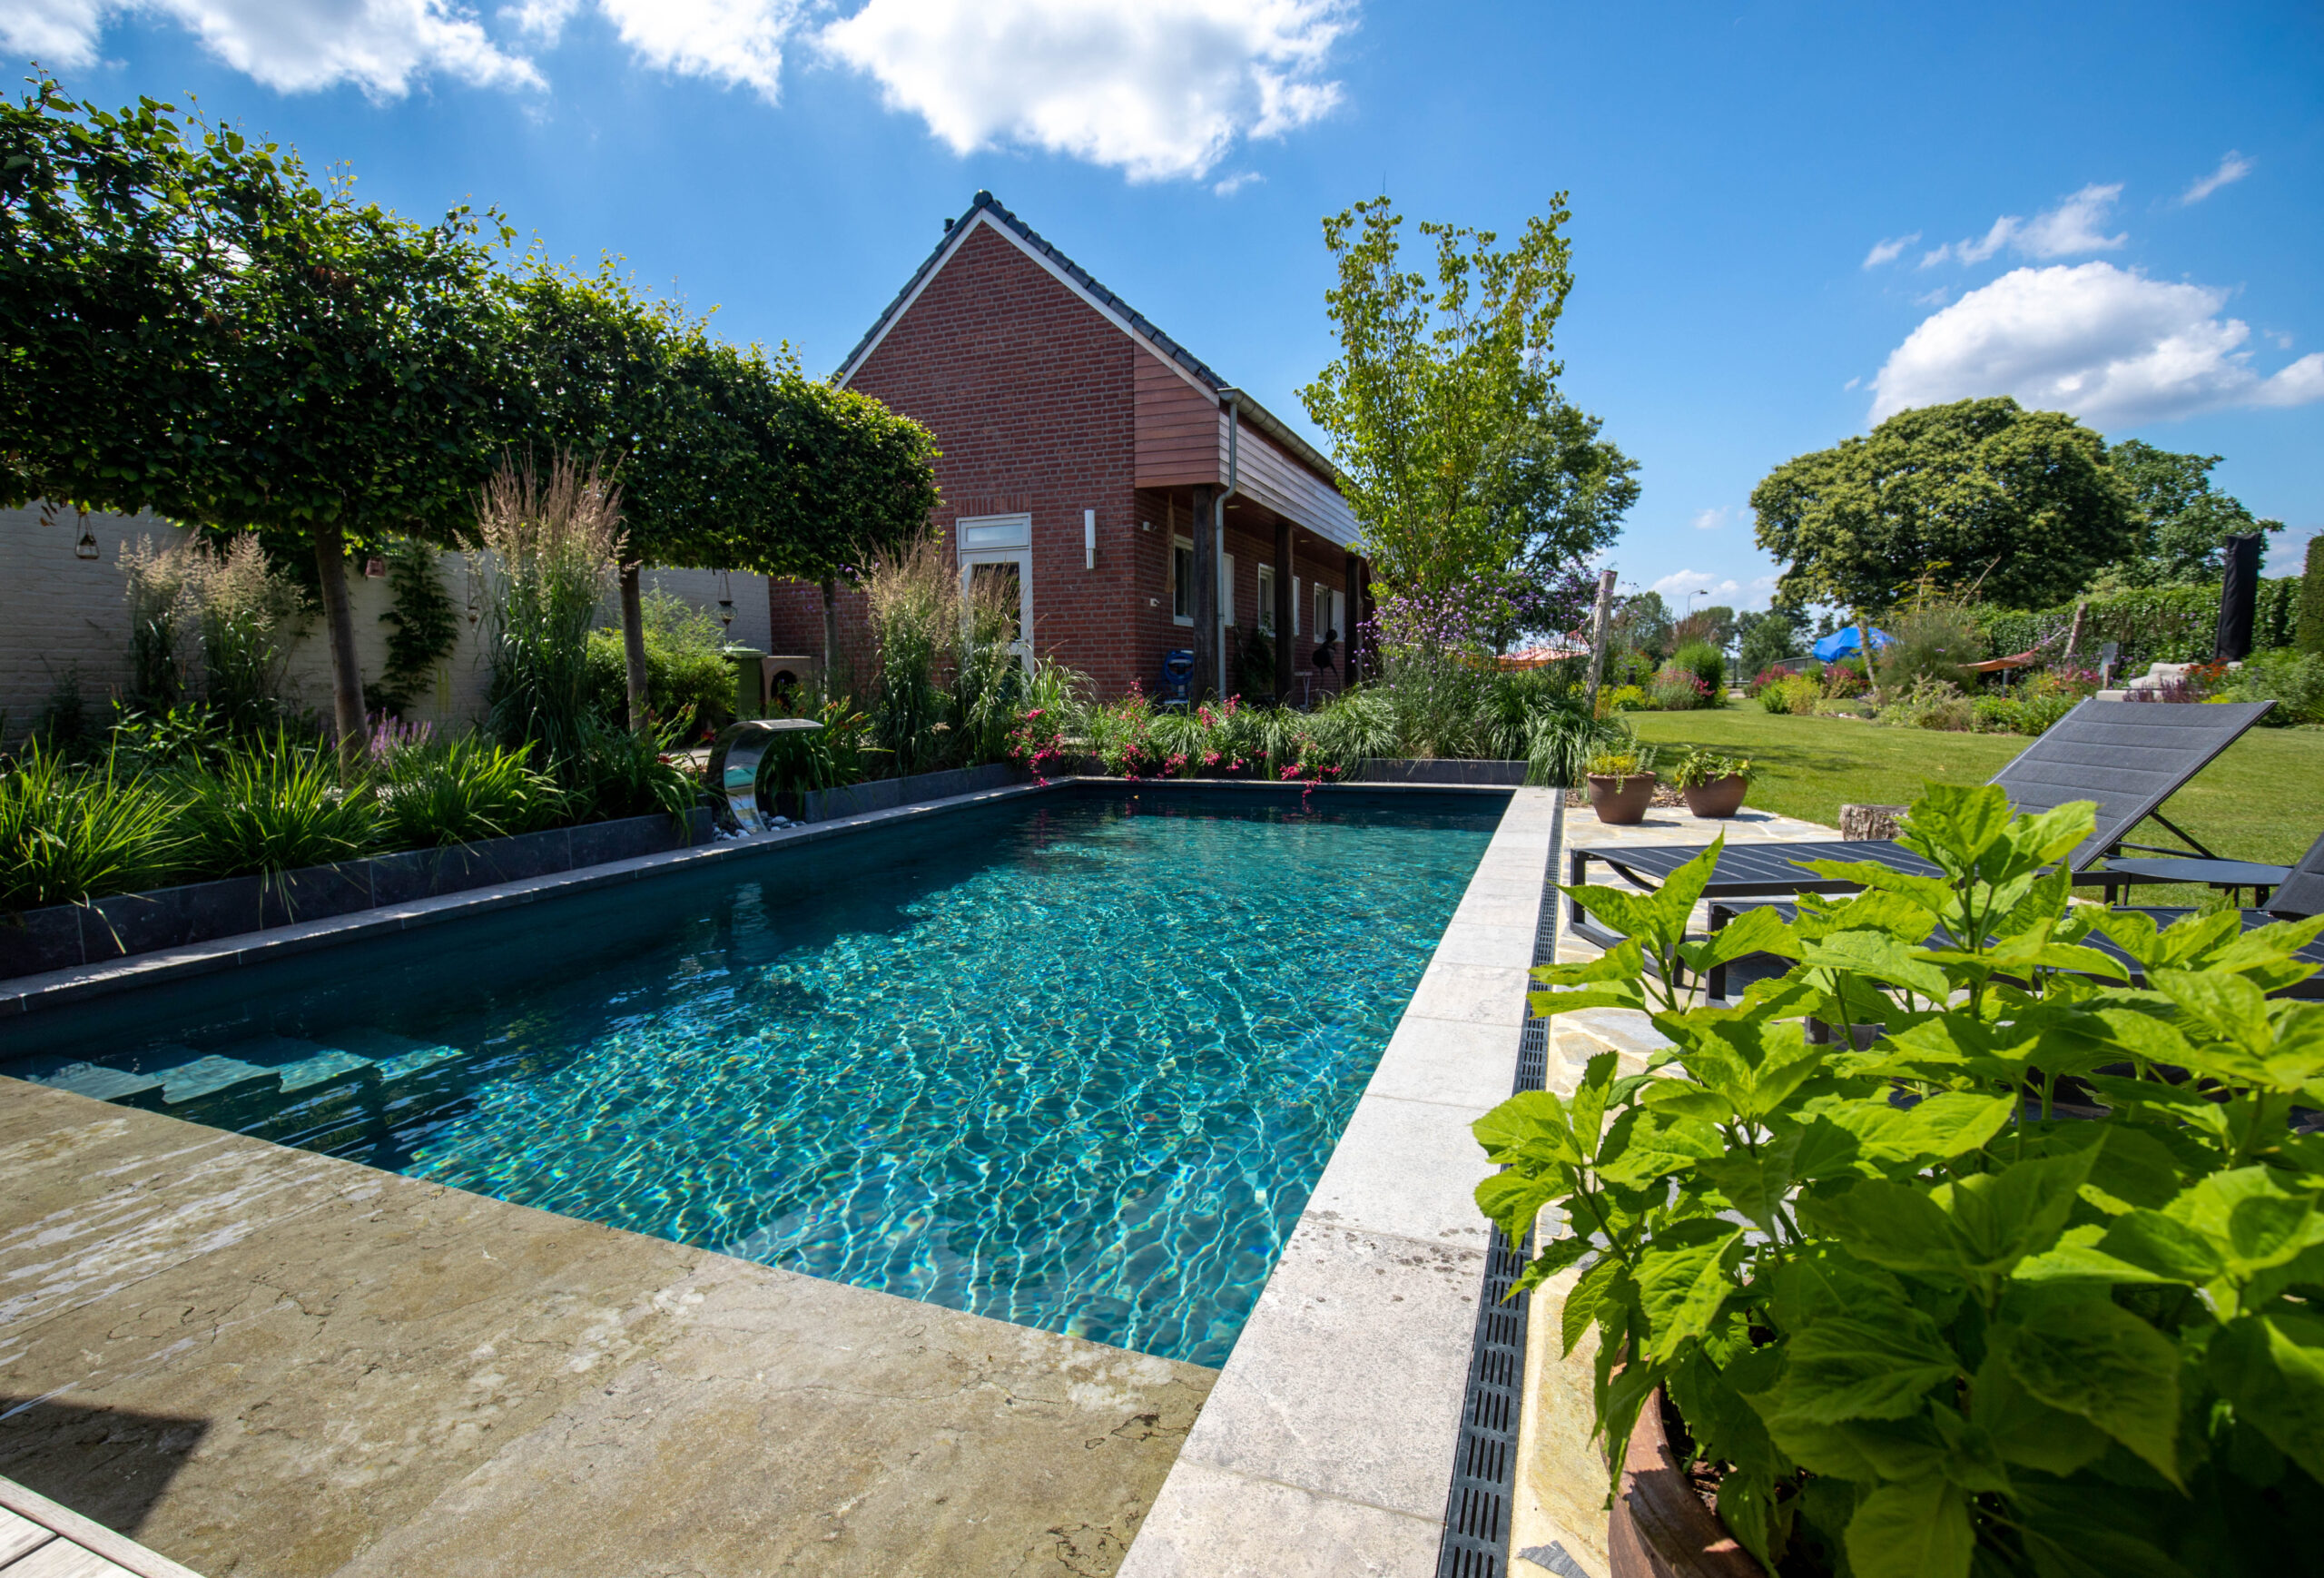 zwembad in tuin laten plaatsen